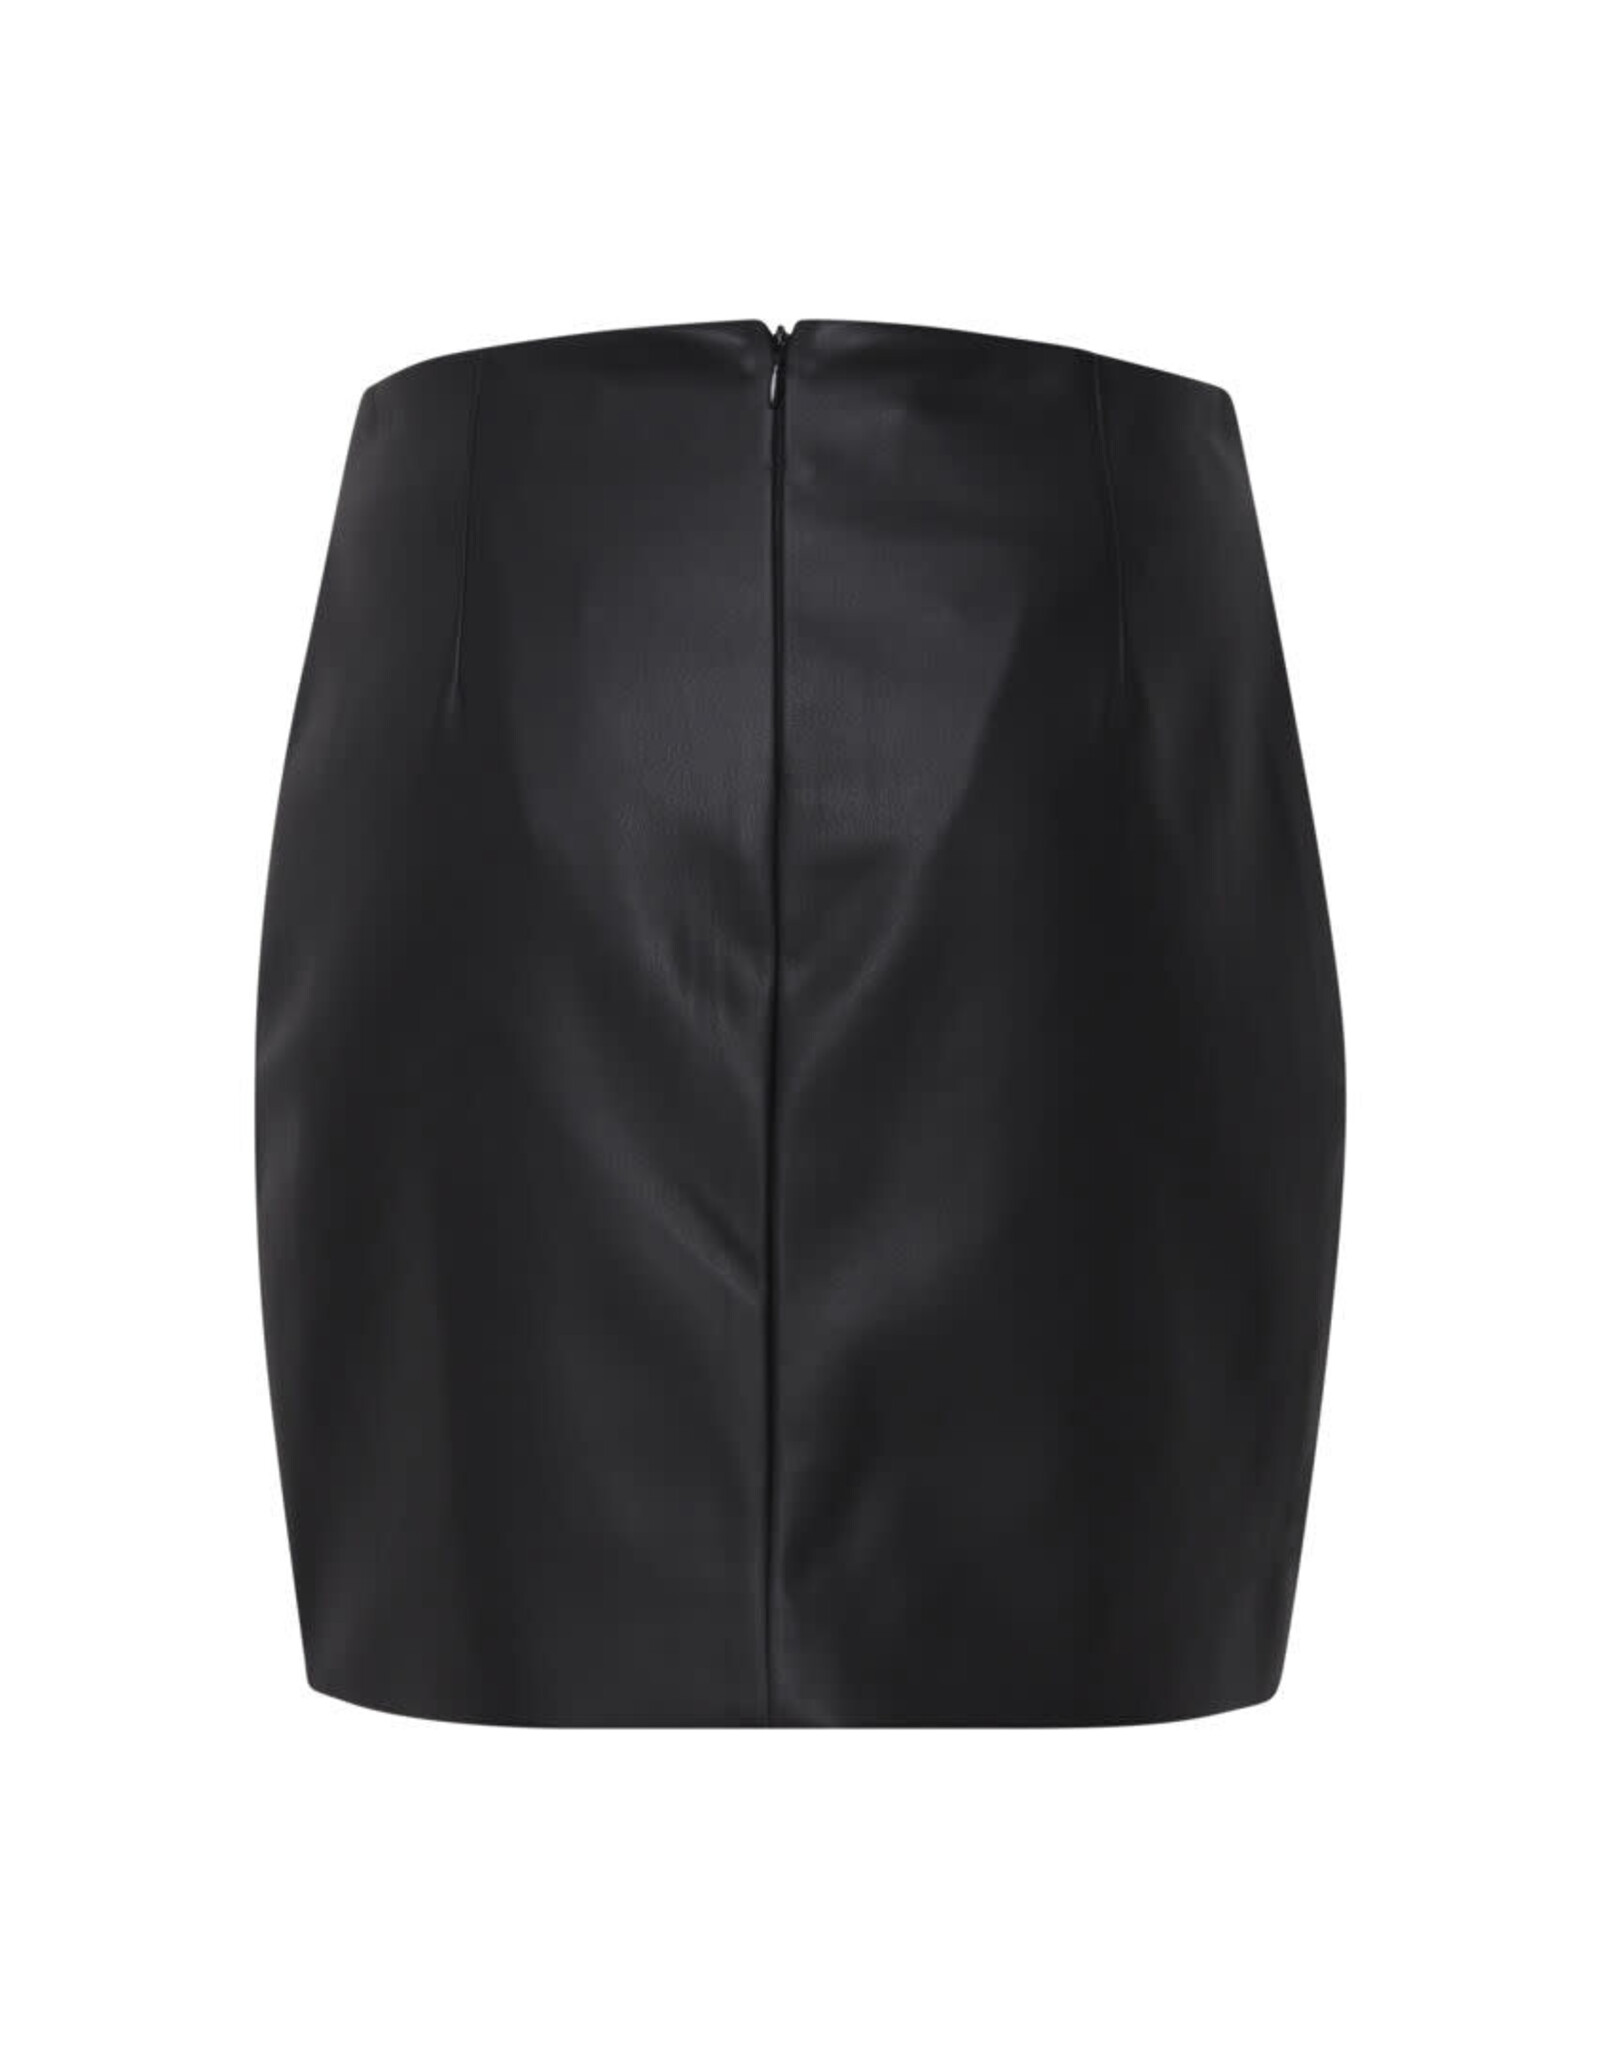 ICHI ICHI - Comano skirt (black)